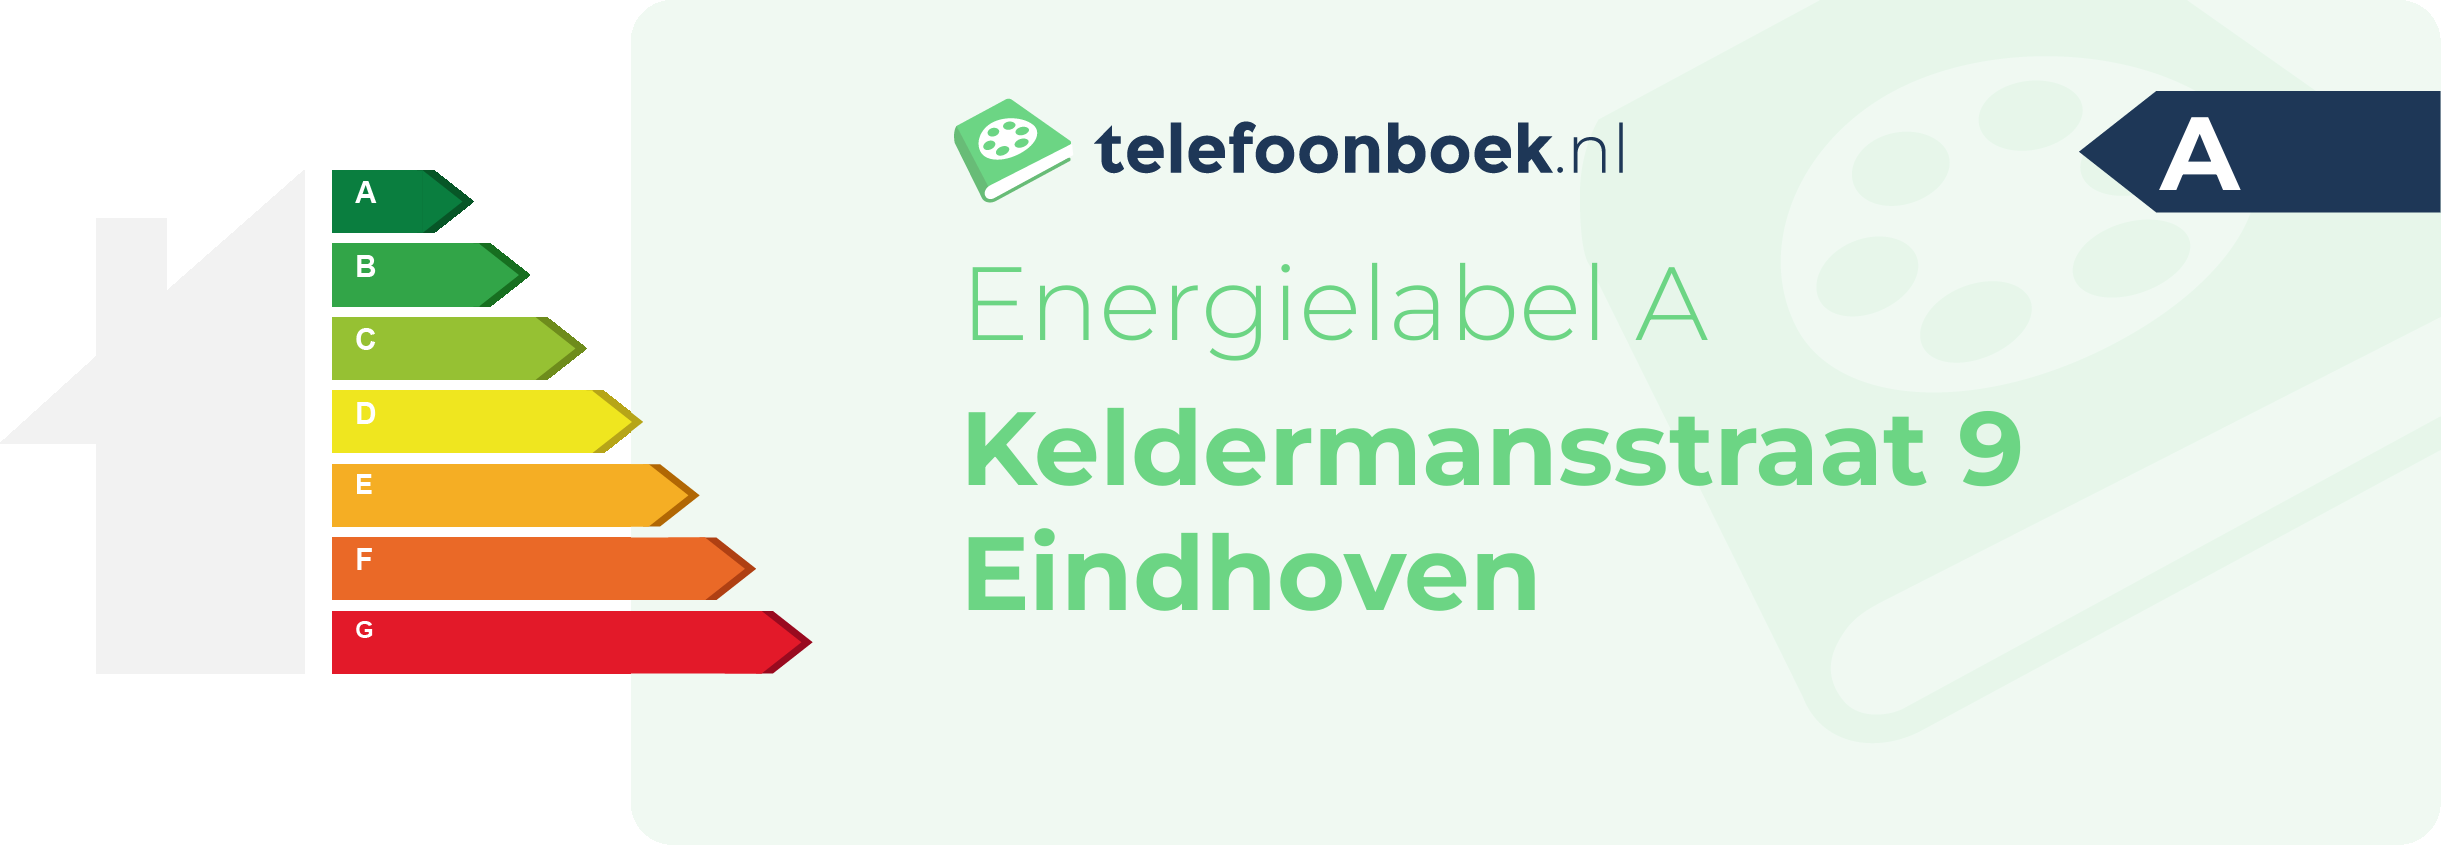 Energielabel Keldermansstraat 9 Eindhoven